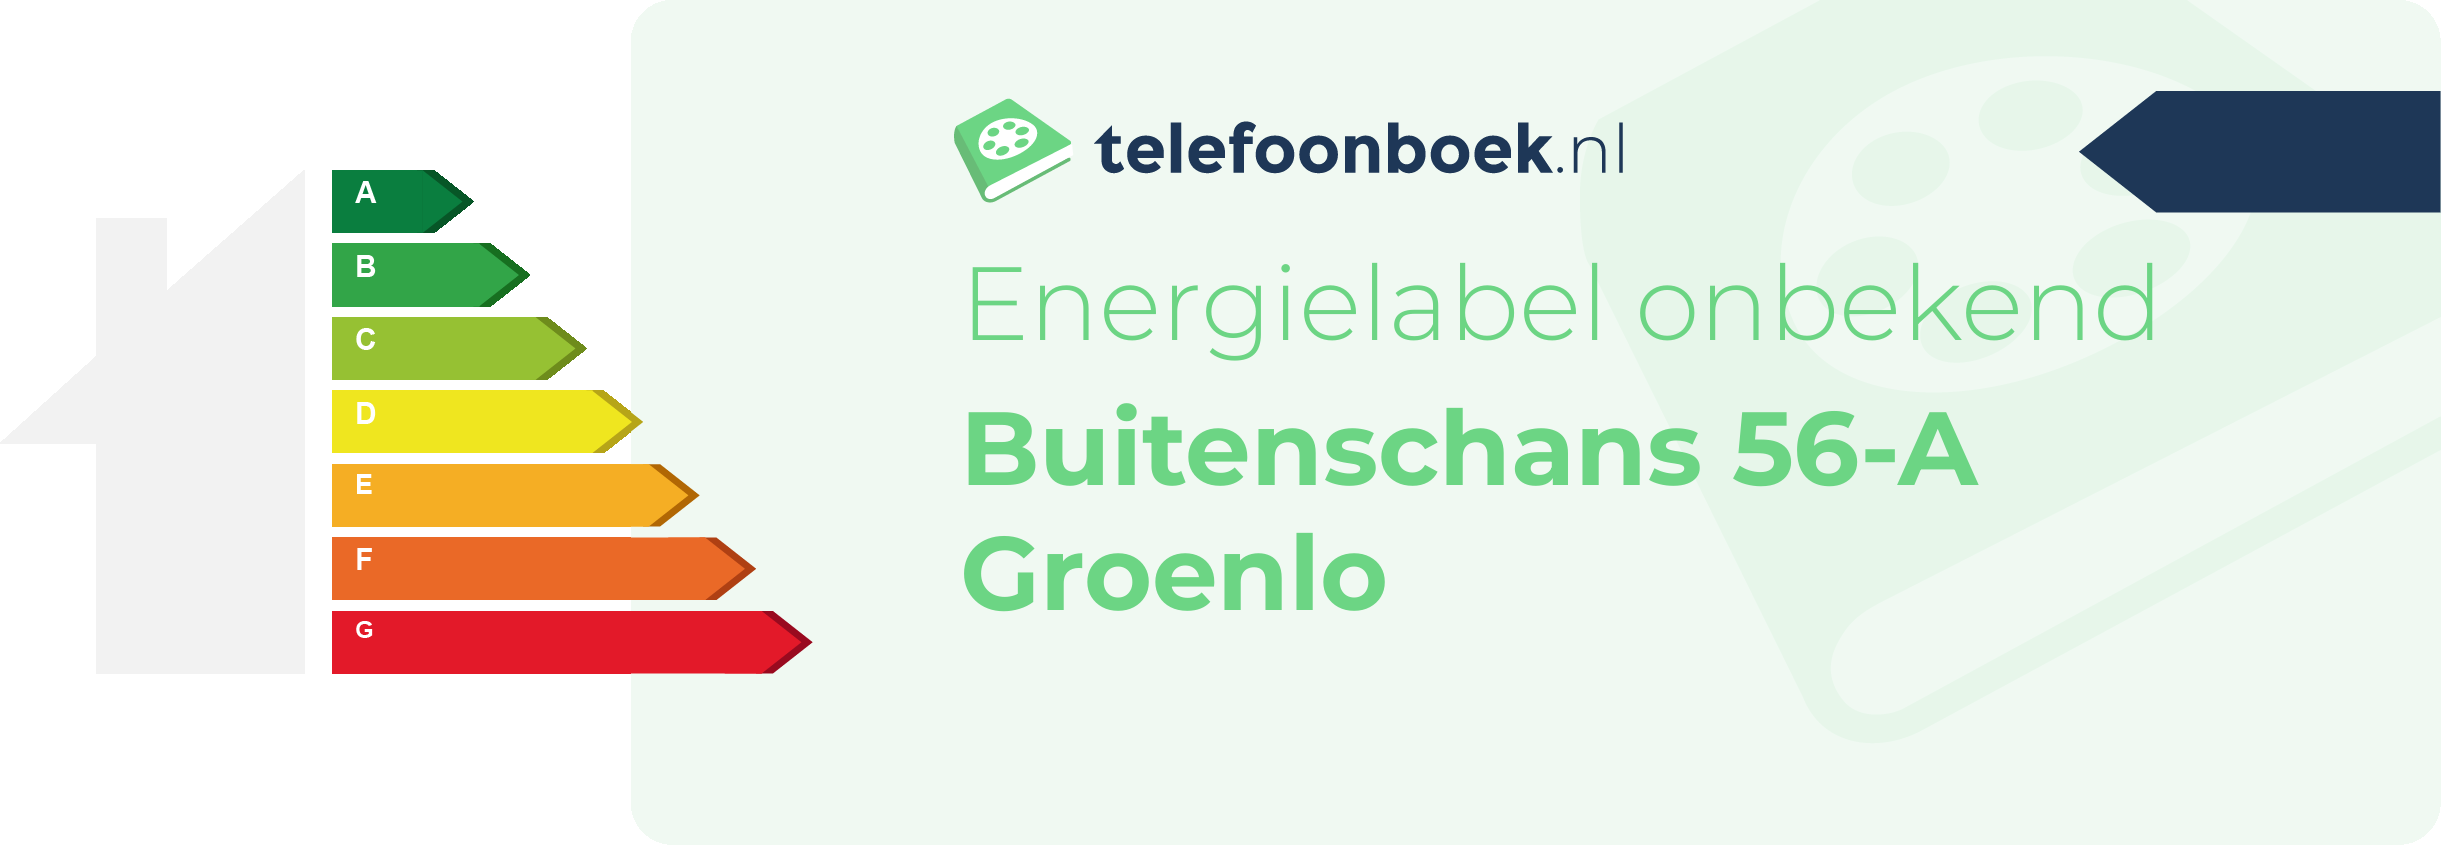 Energielabel Buitenschans 56-A Groenlo